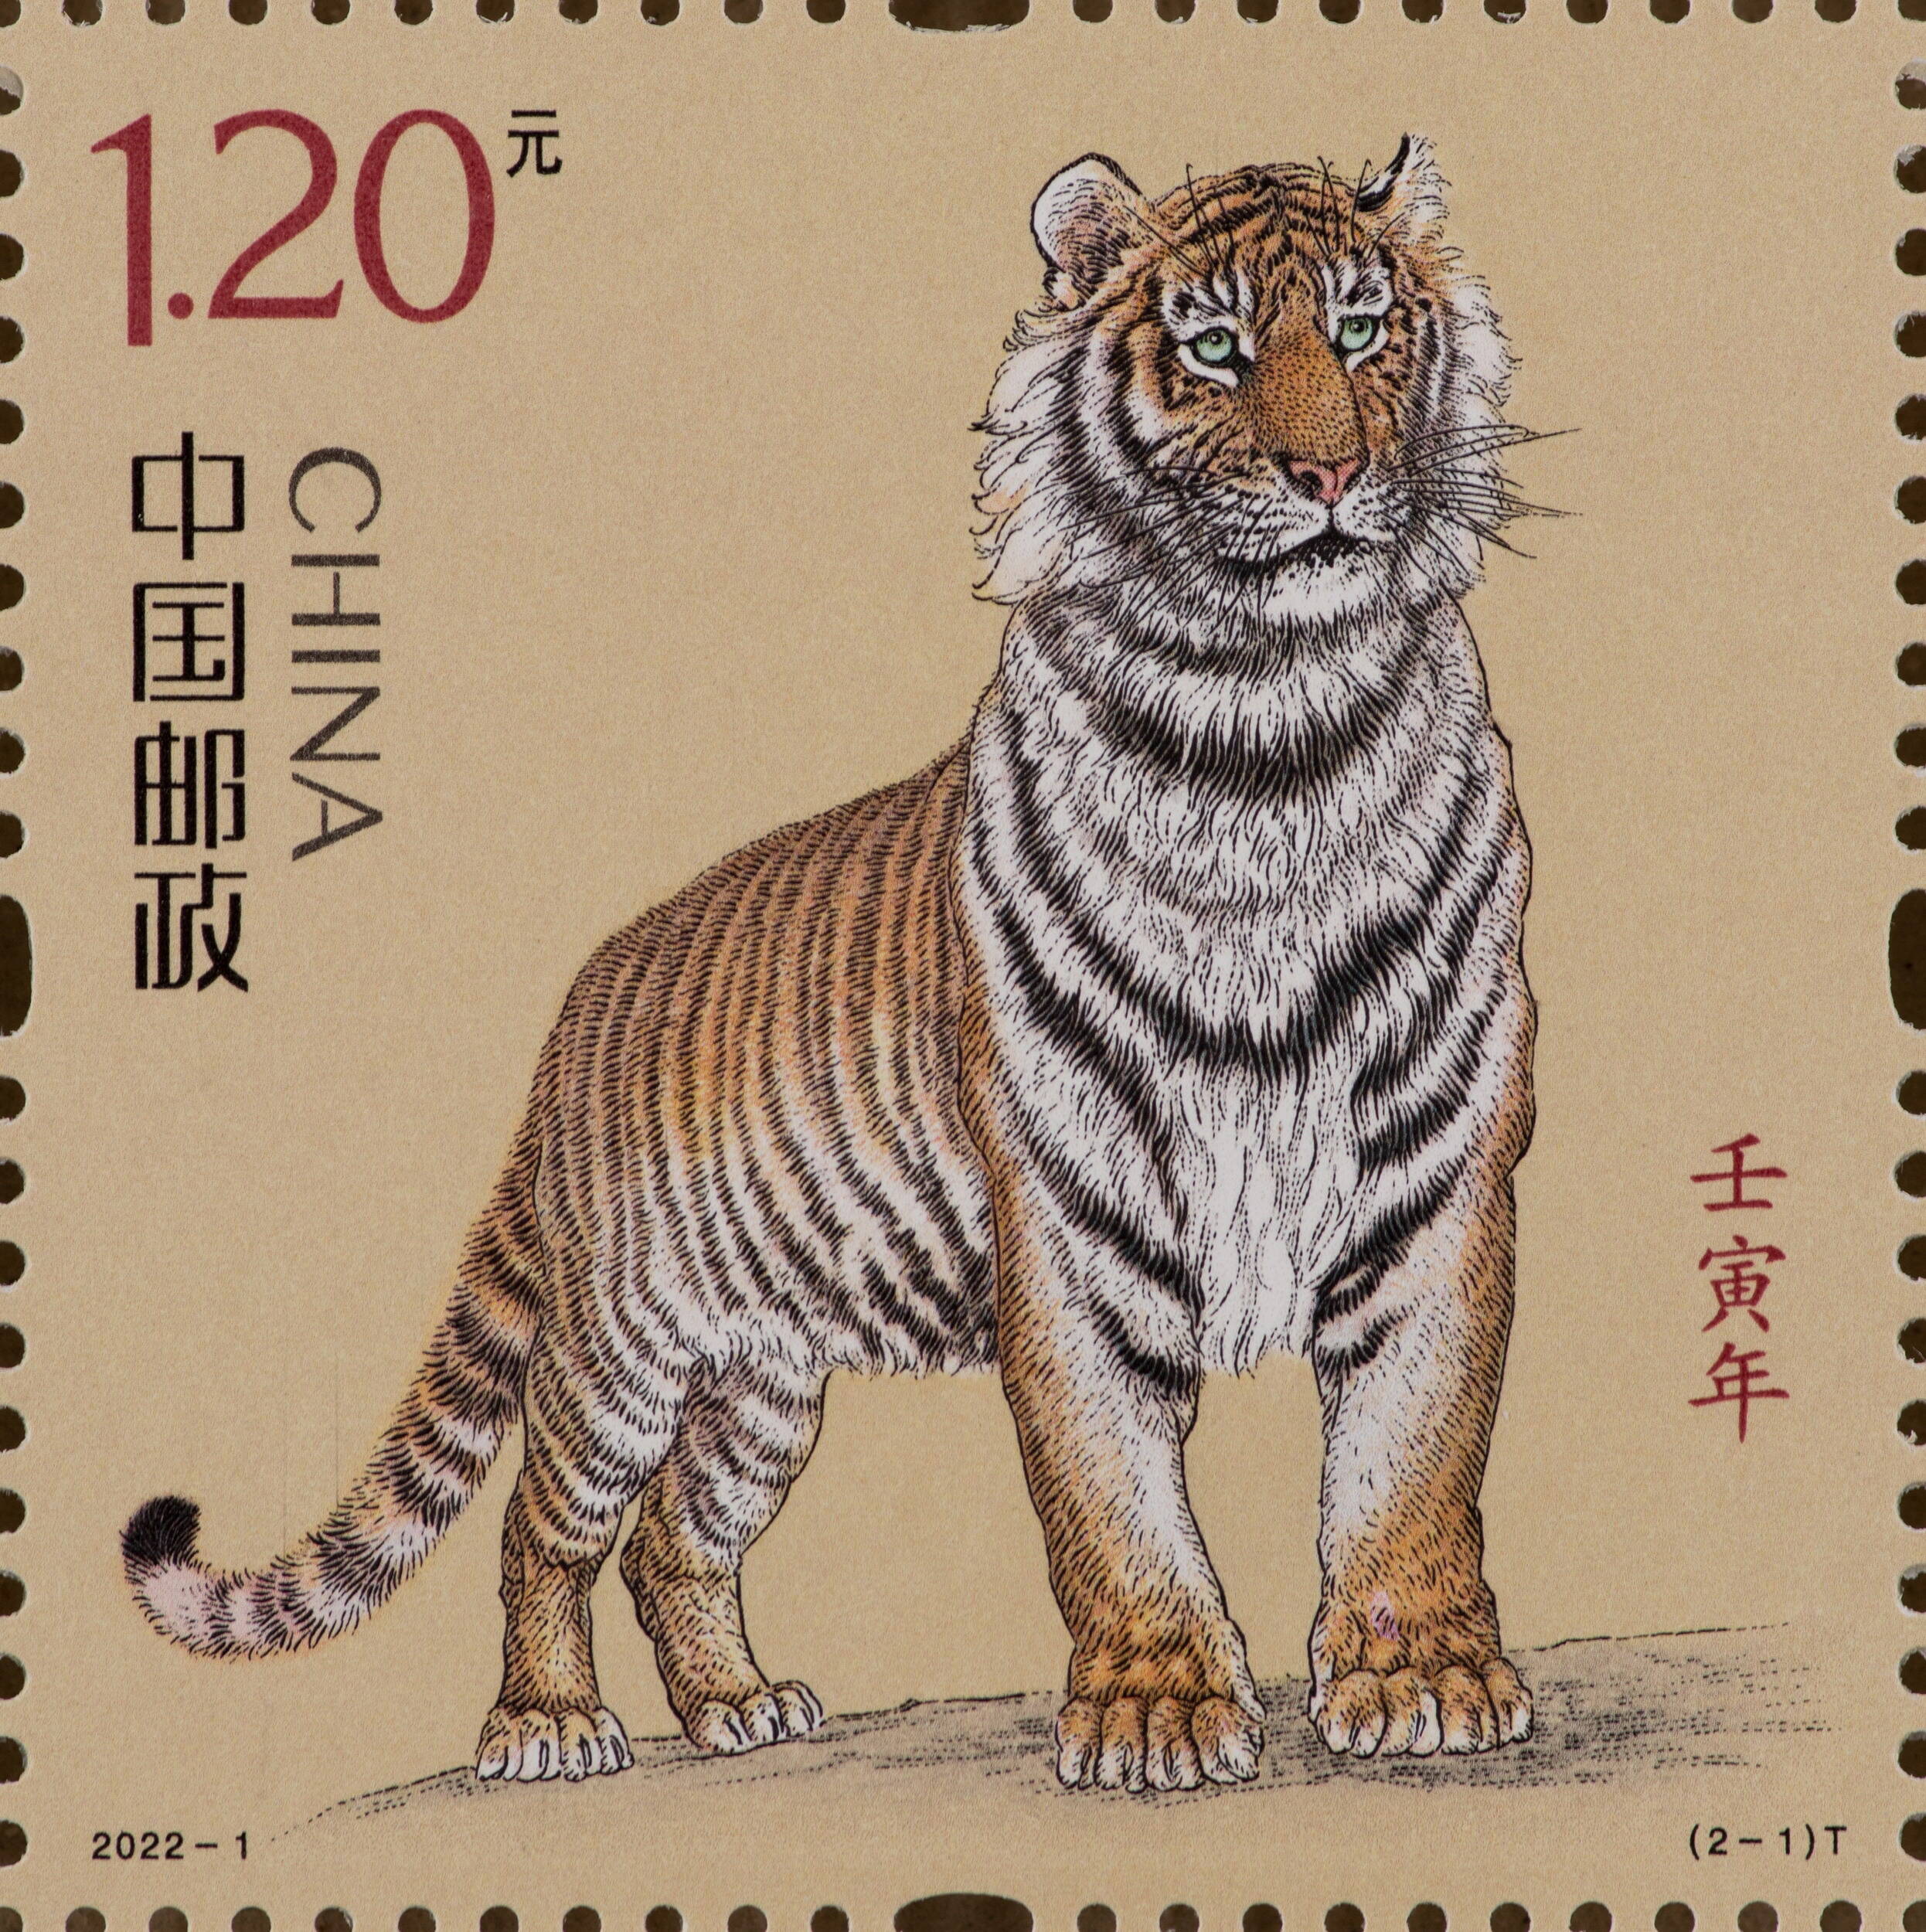 虎年邮票设计手绘图片